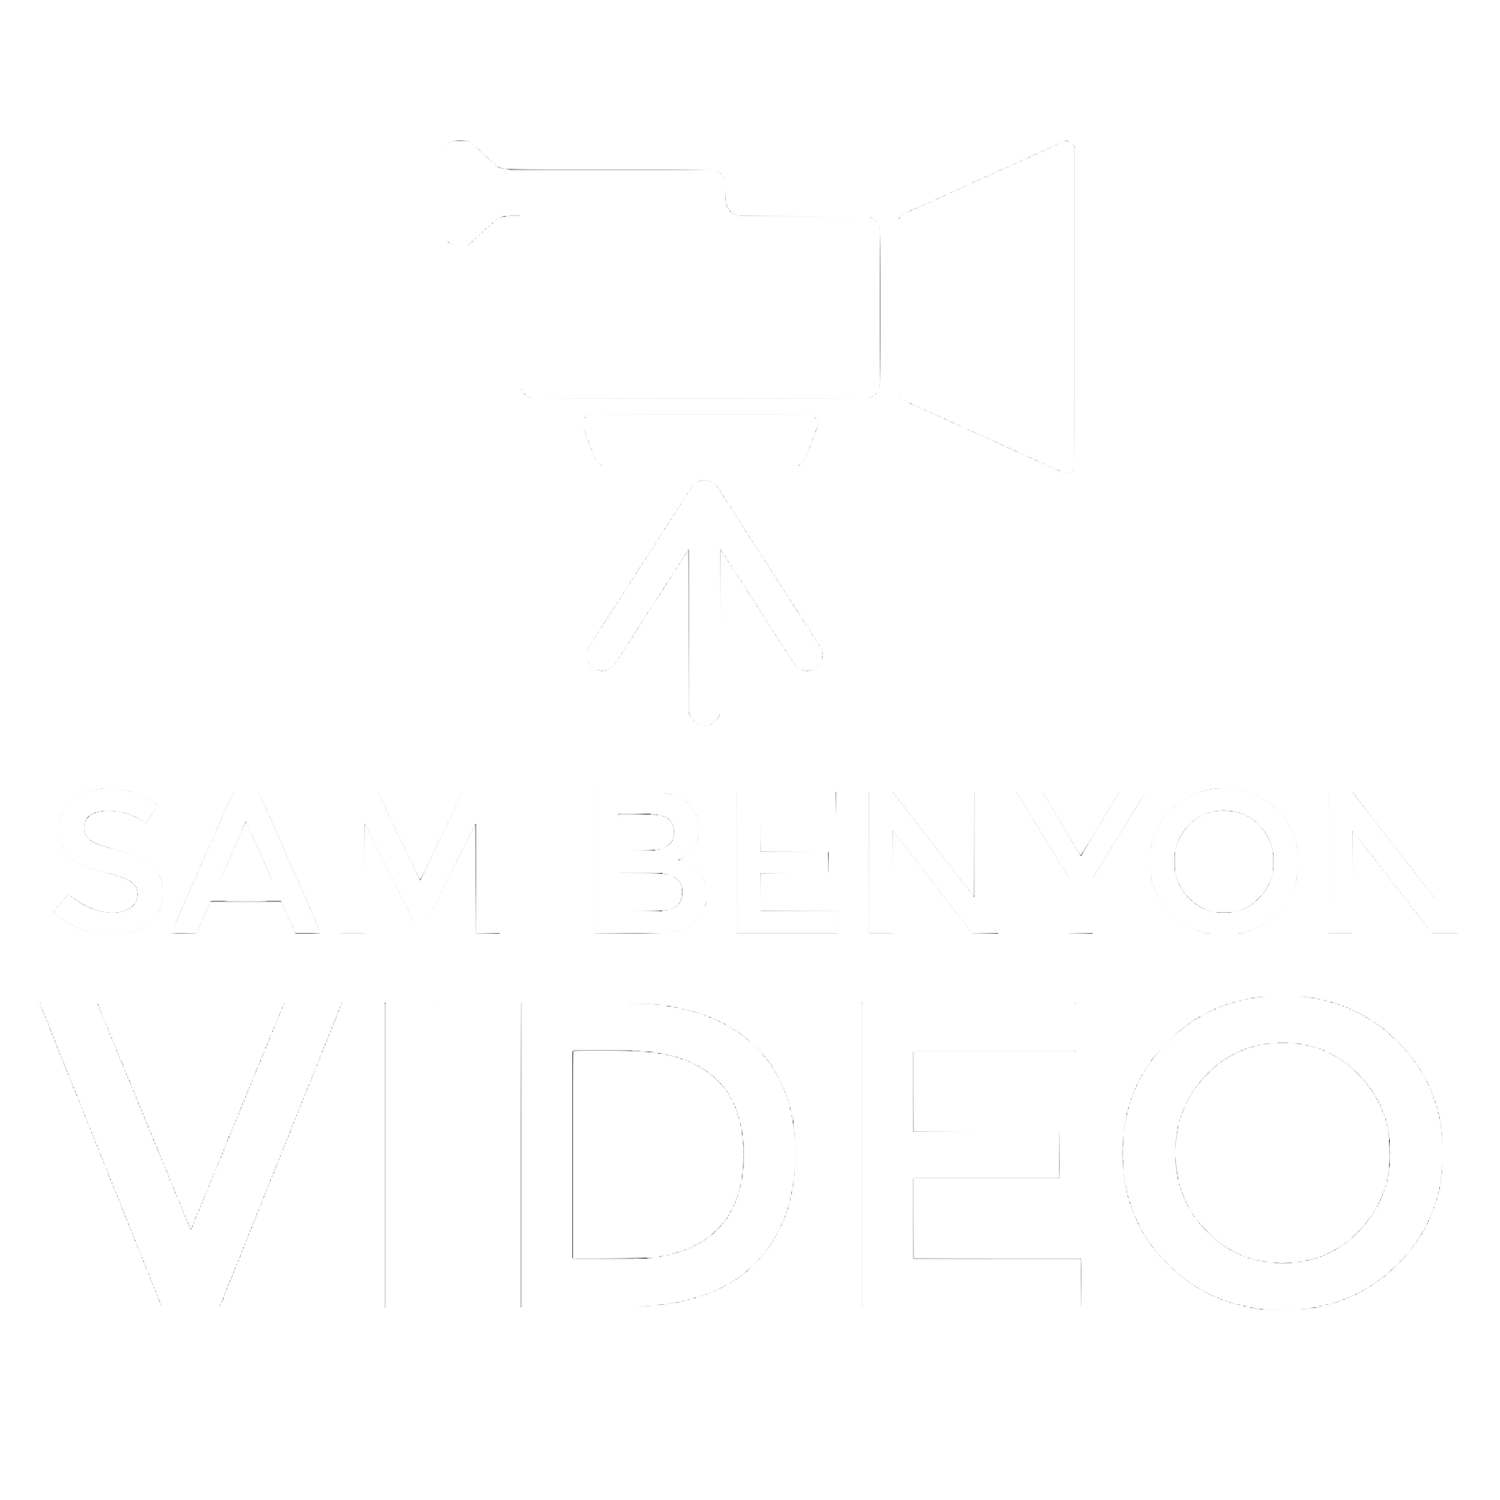 Sam Benyon Video